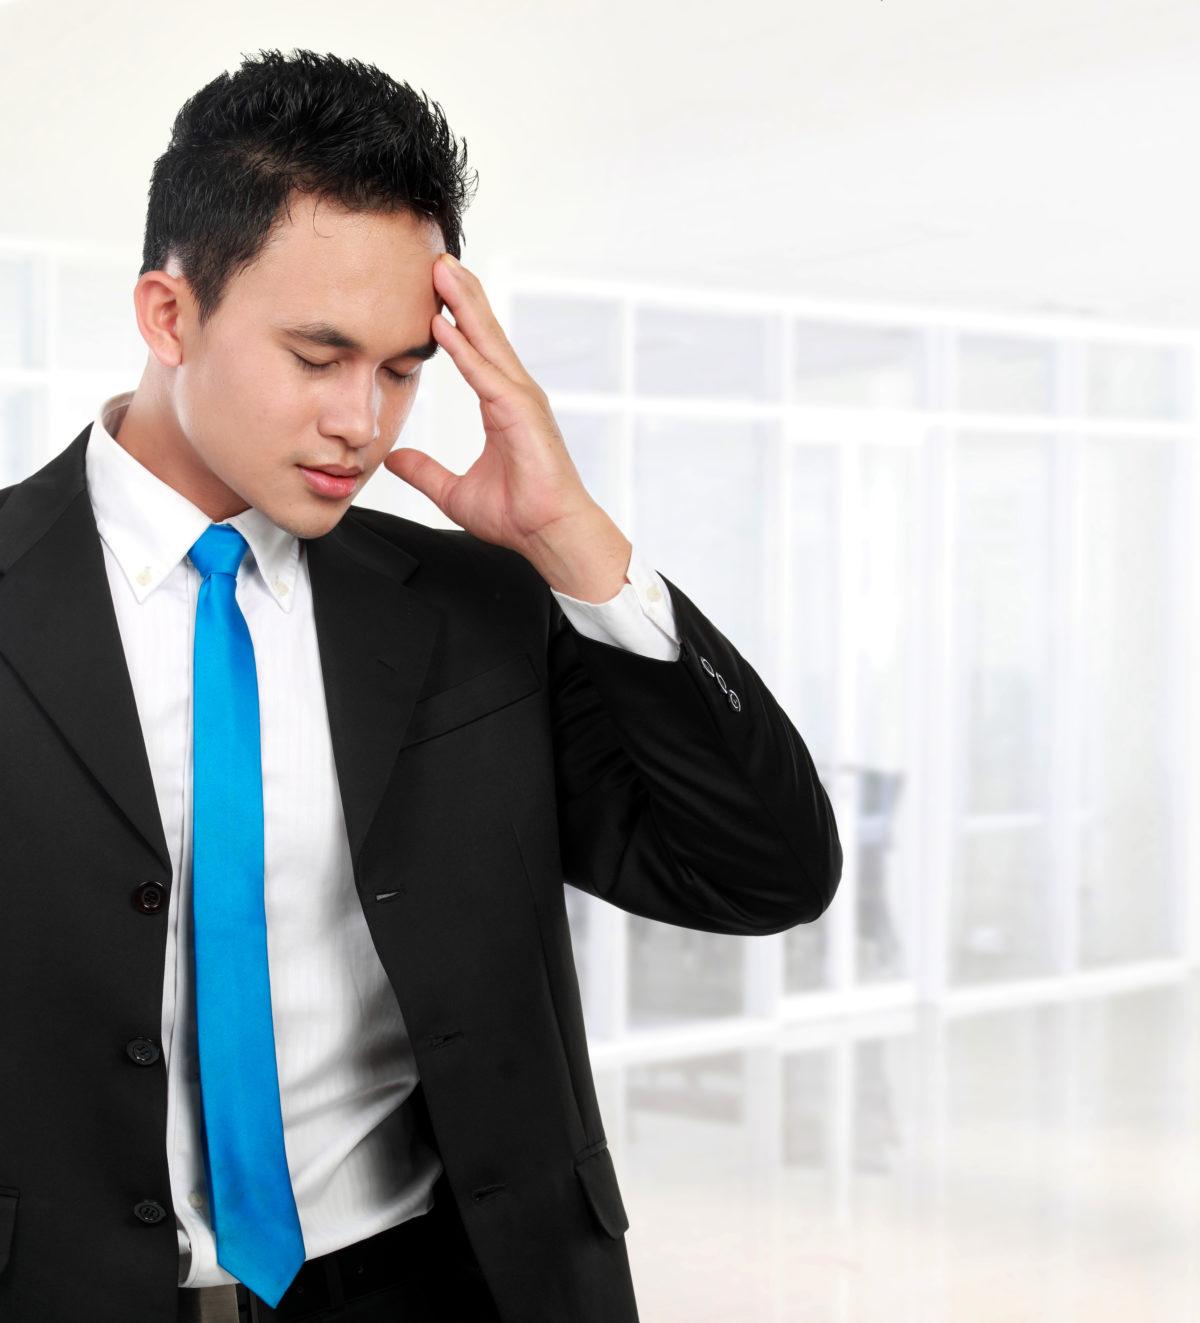 Le stress au travail a un impact négatif sur les performances